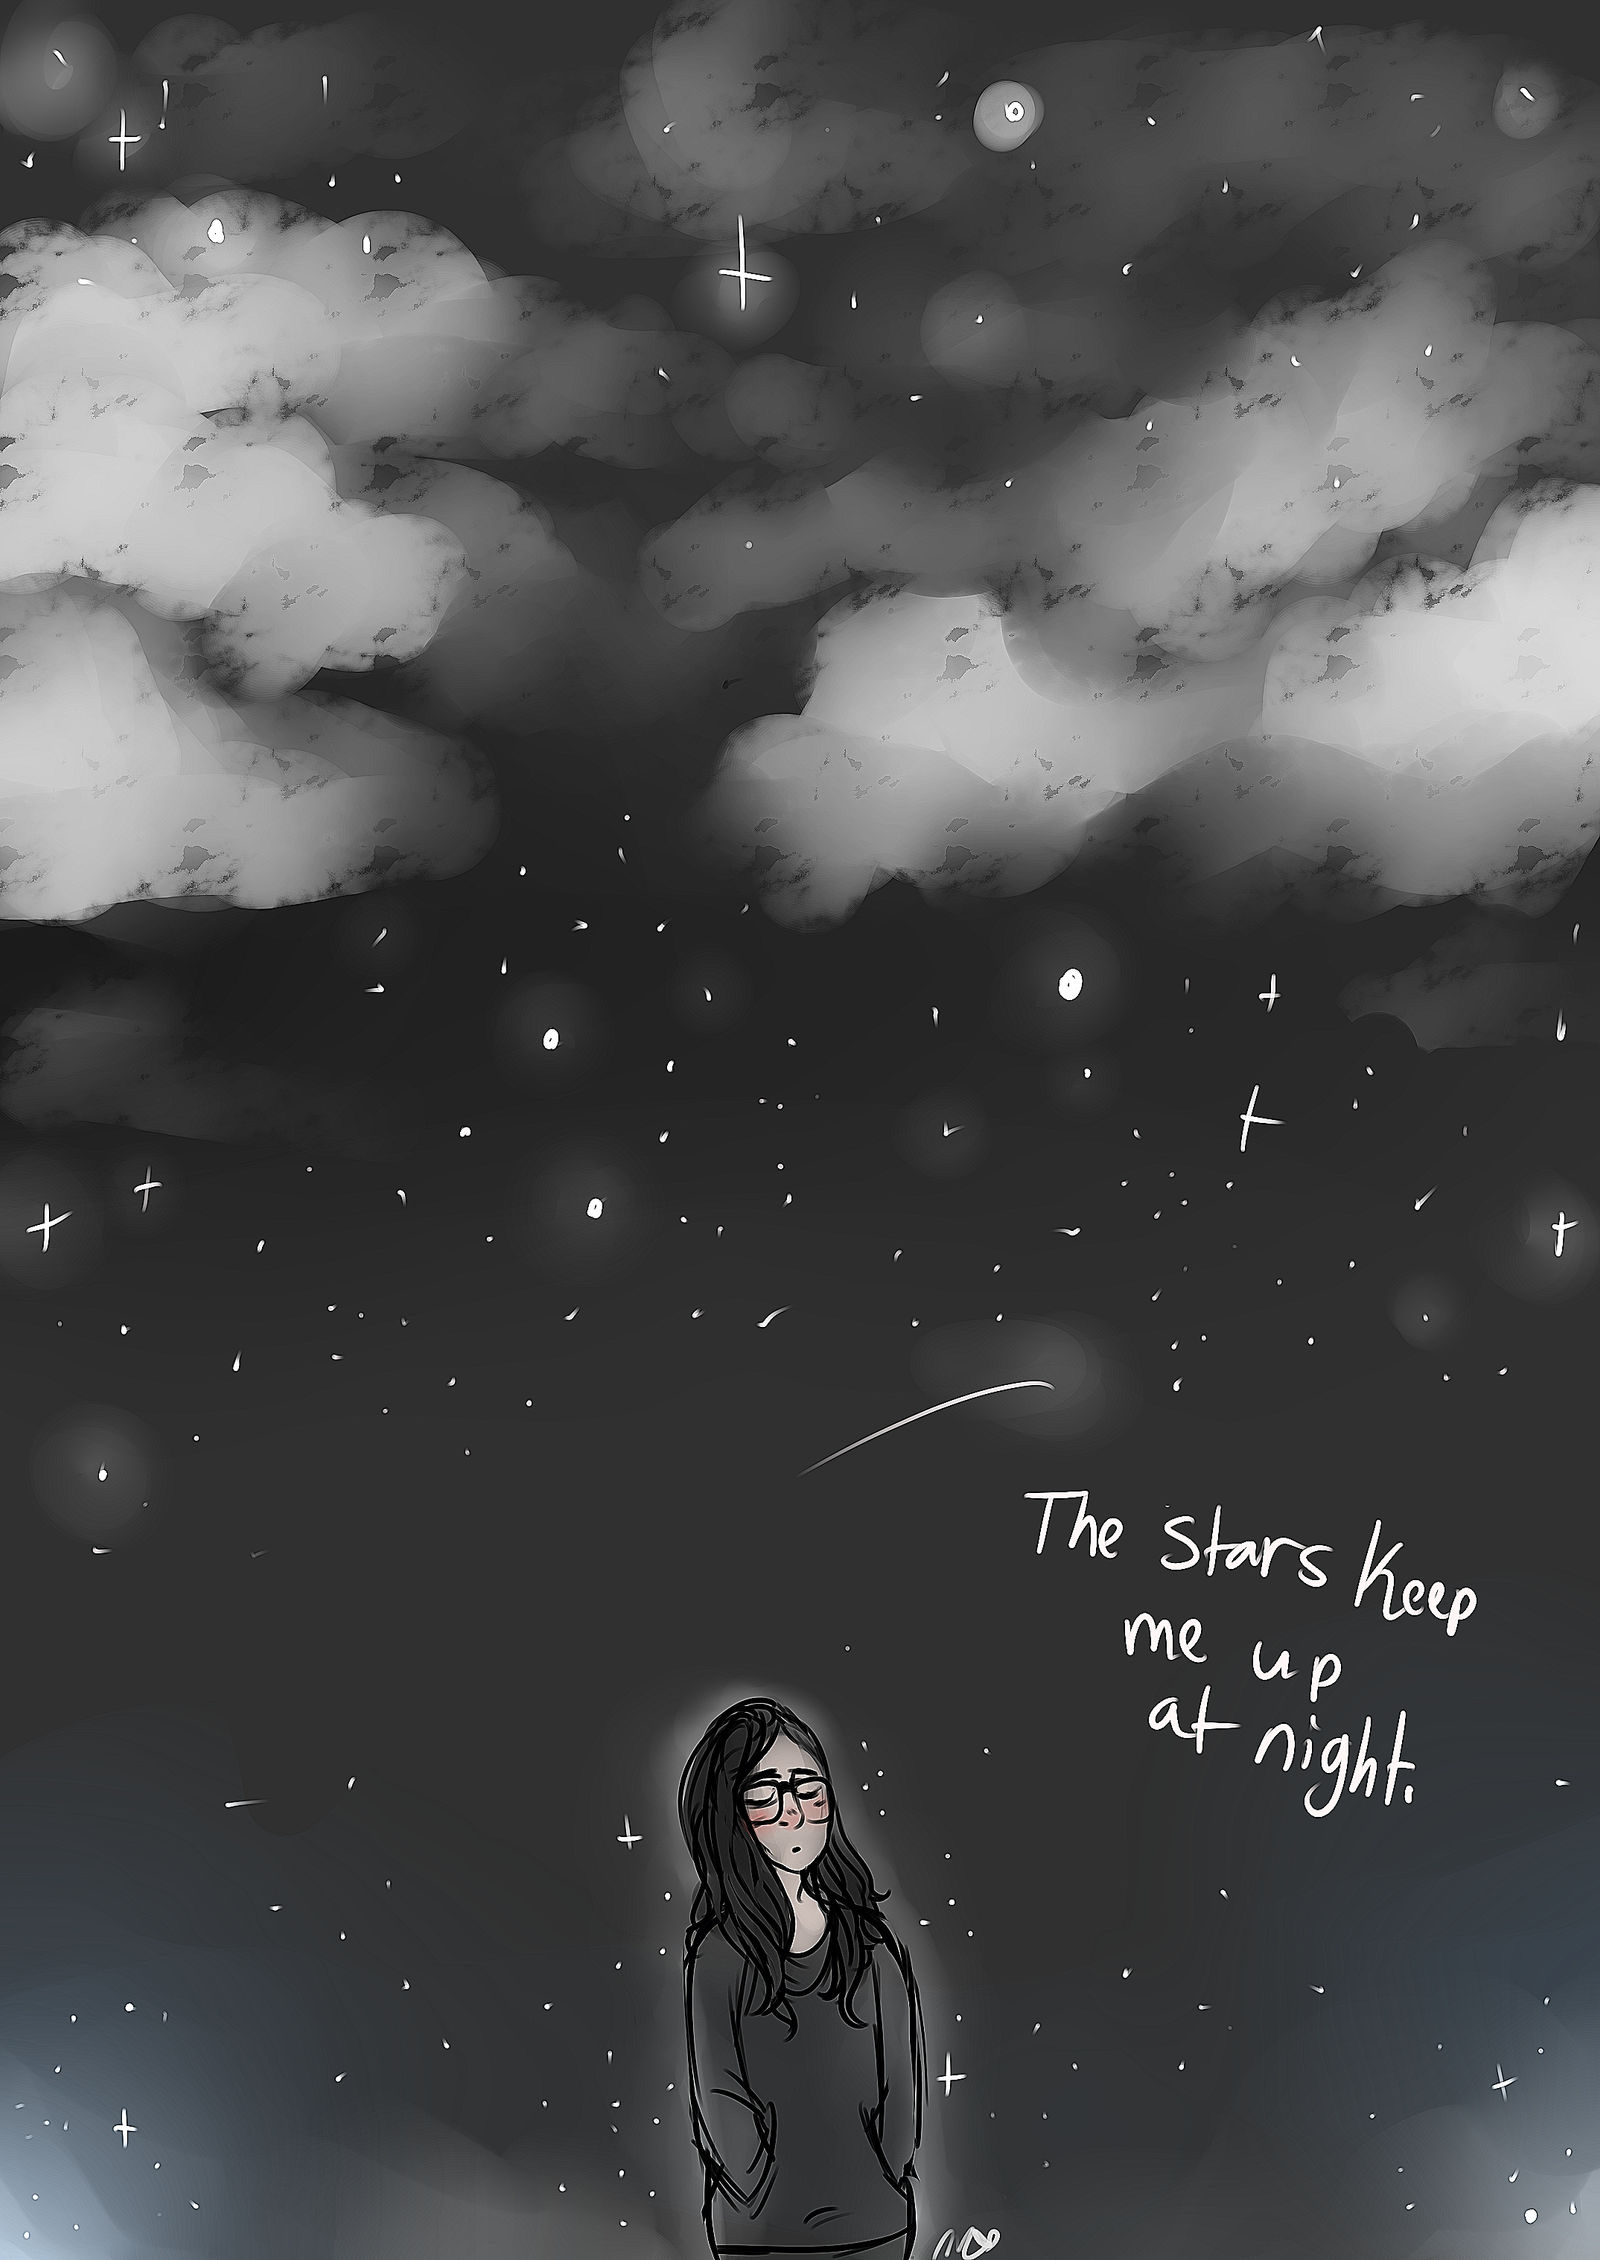 The night sky